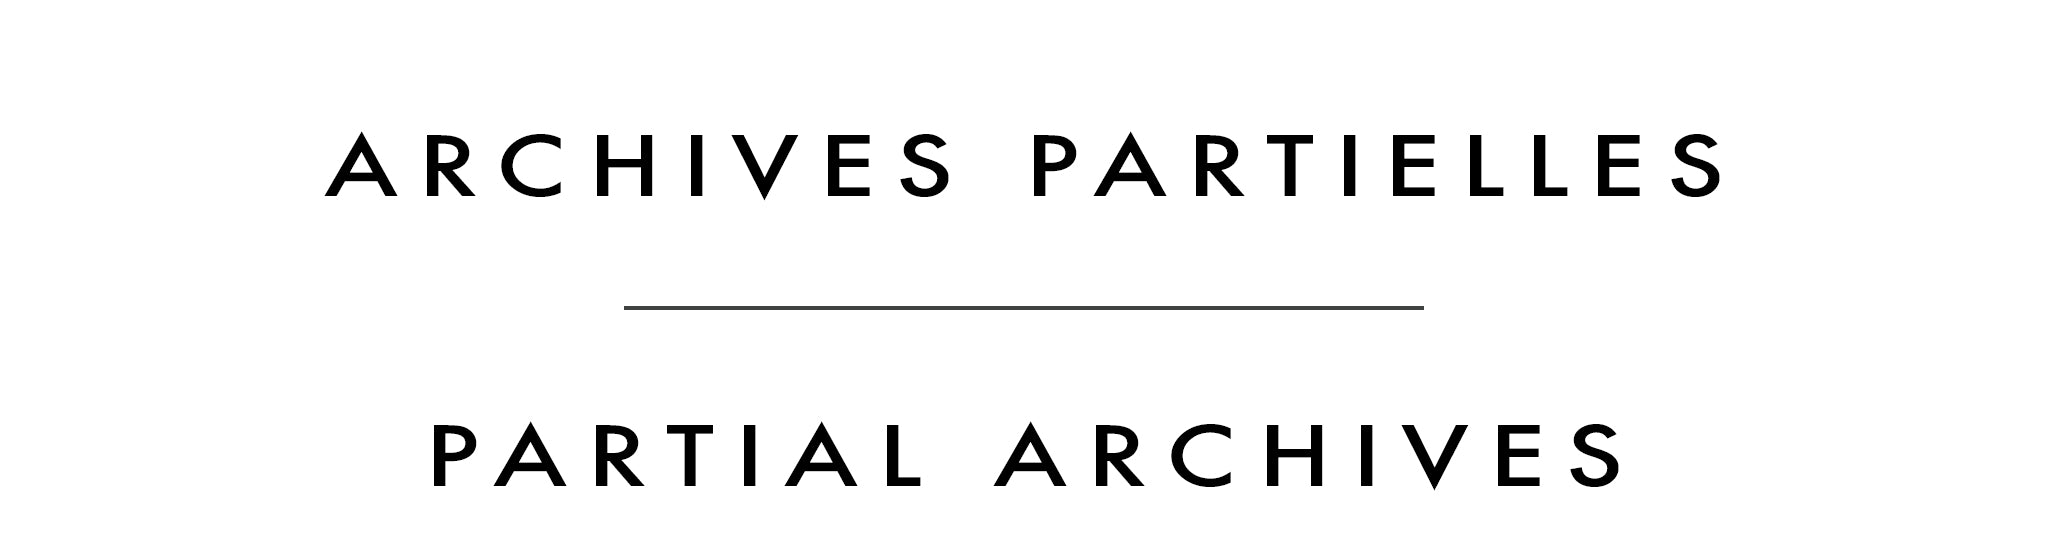 Archives partielles | Partial Archives | Erica Hawkes